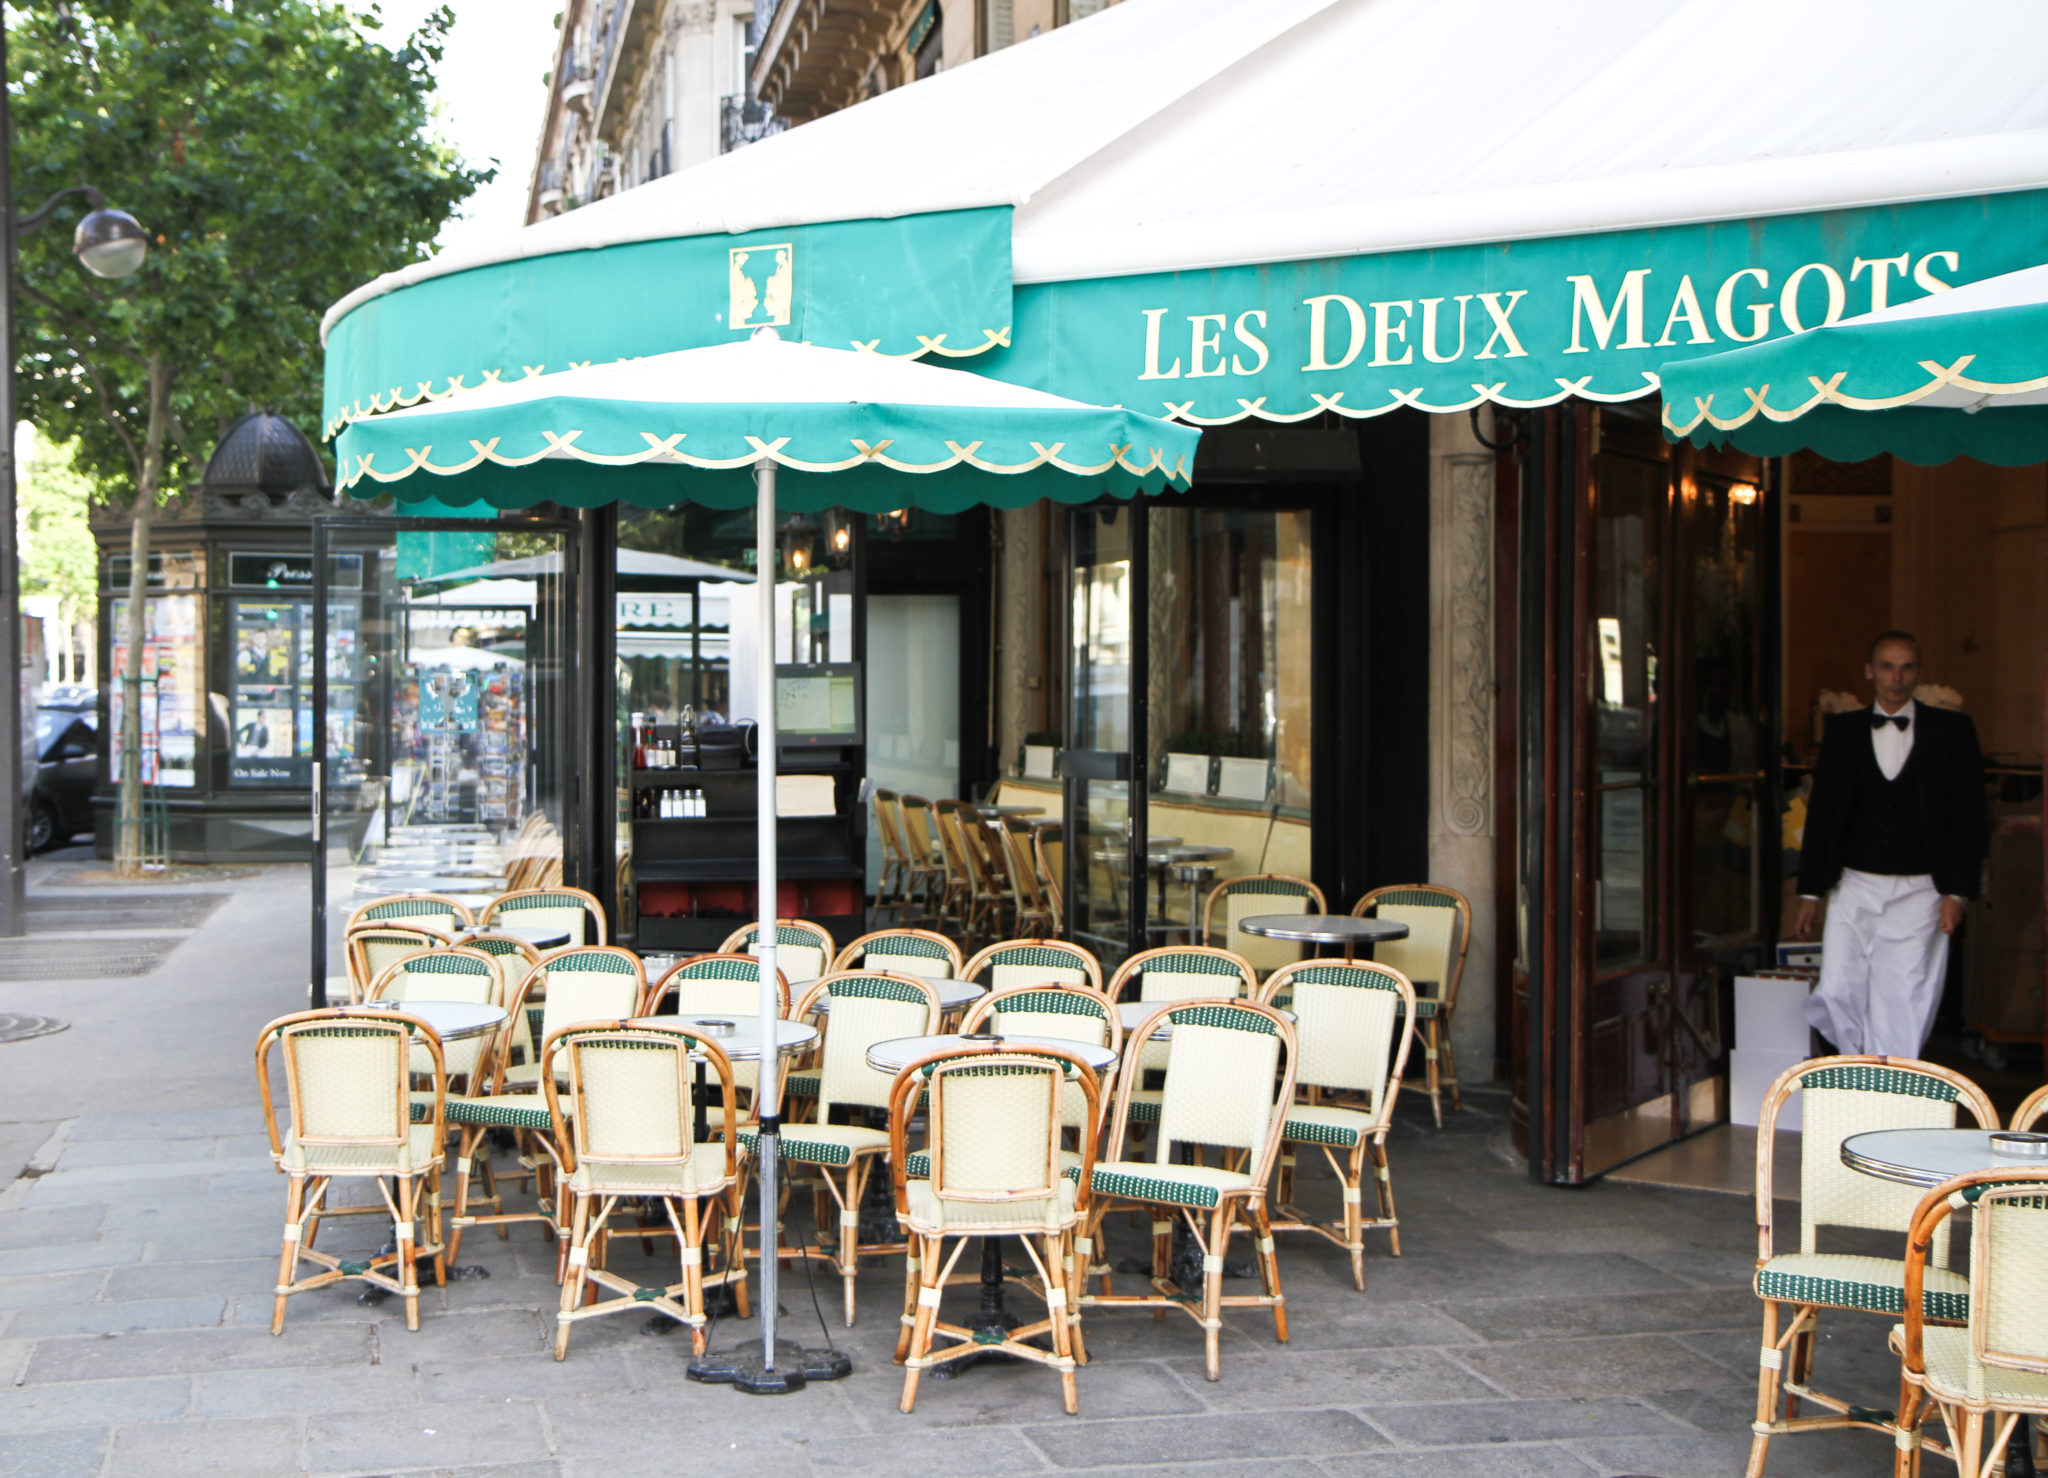 What Time Do Cafés Open in Paris?